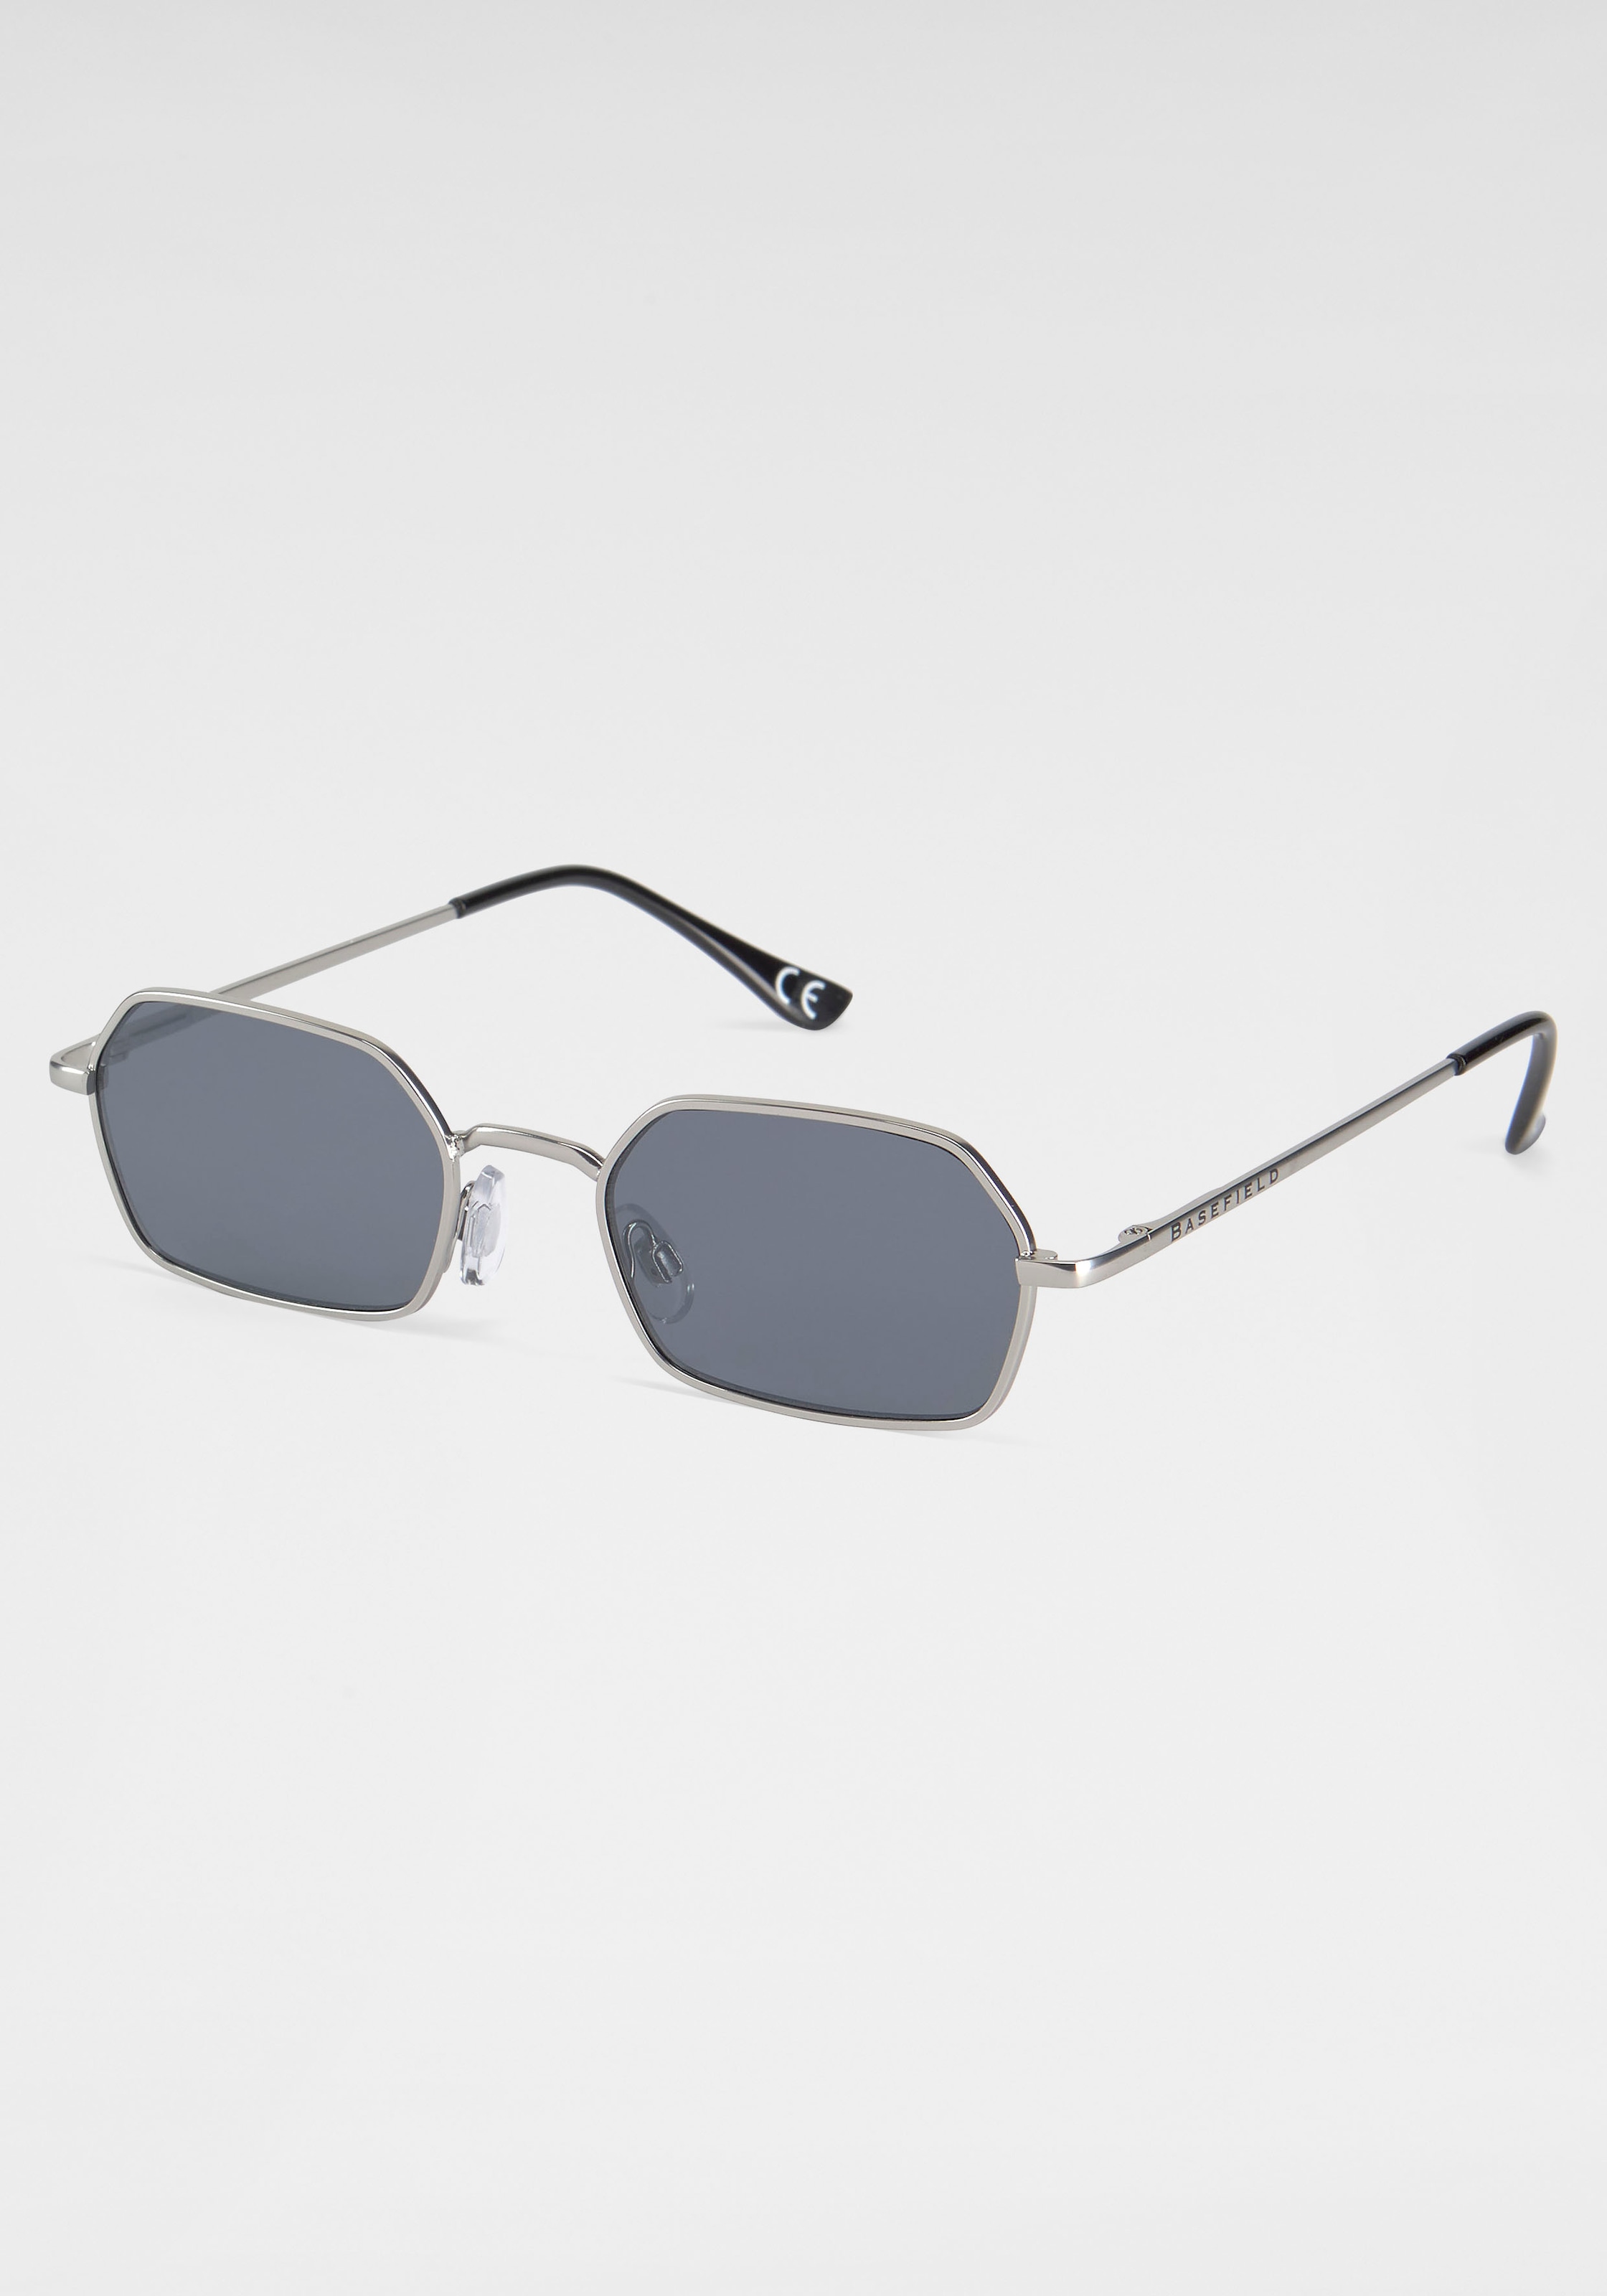 BASEFIELD Retrosonnenbrille kaufen bei OTTO | Sonnenbrillen